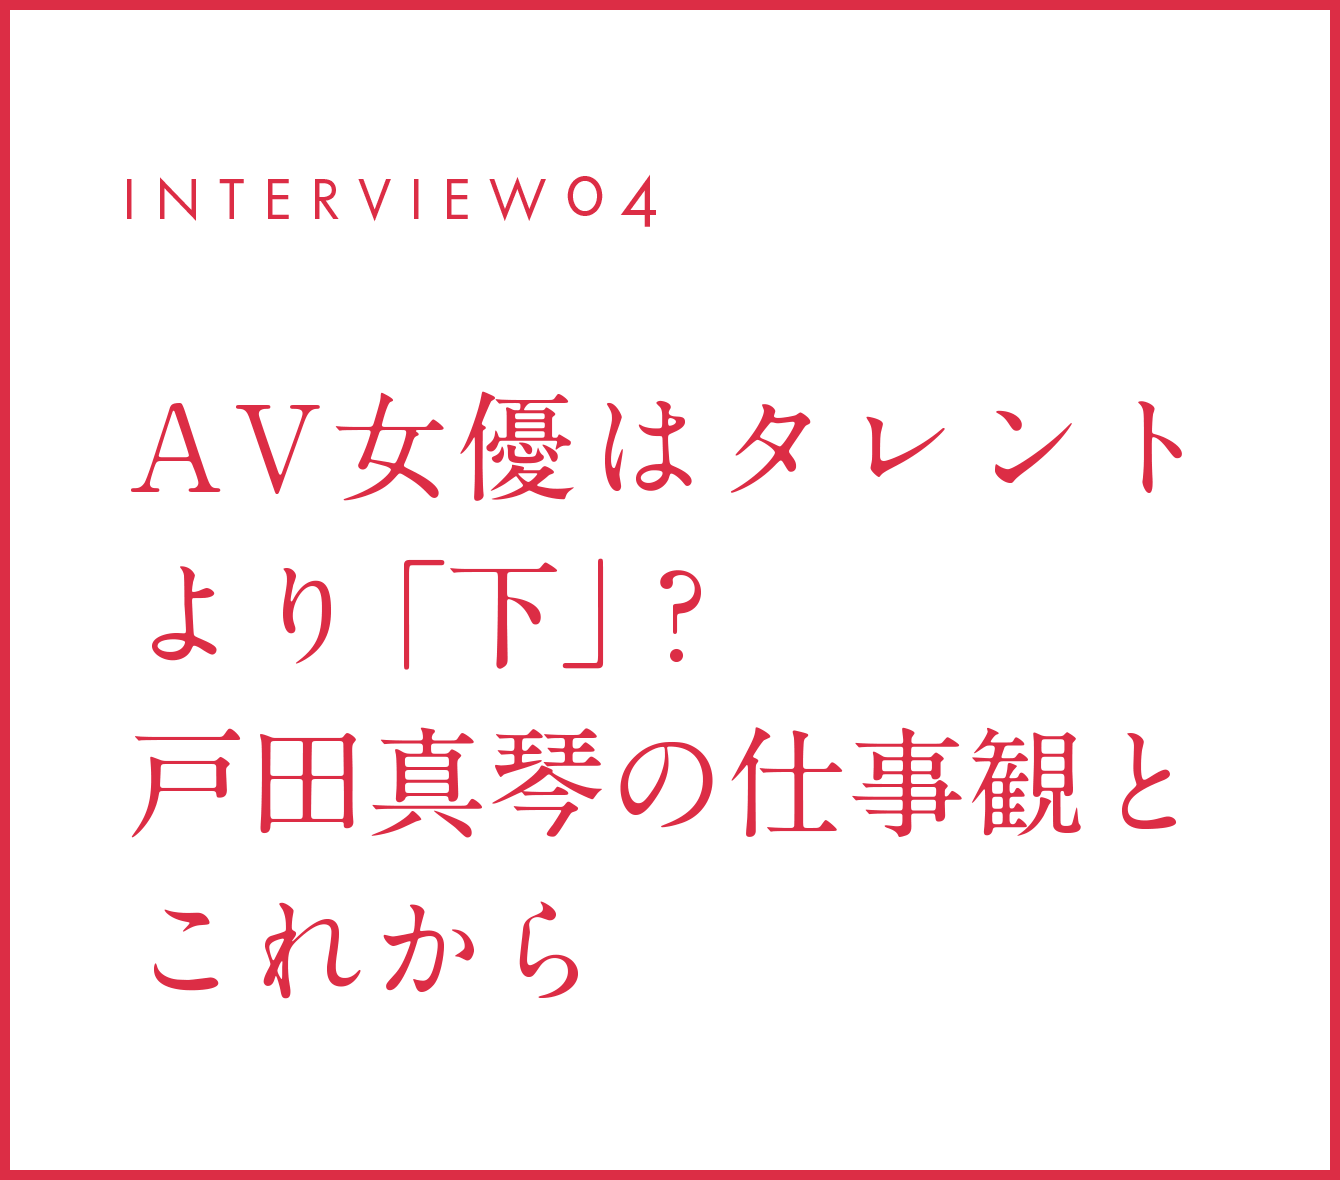 INTERVIEW04 AV女優はタレントより「下」？戸田真琴の仕事観とこれから